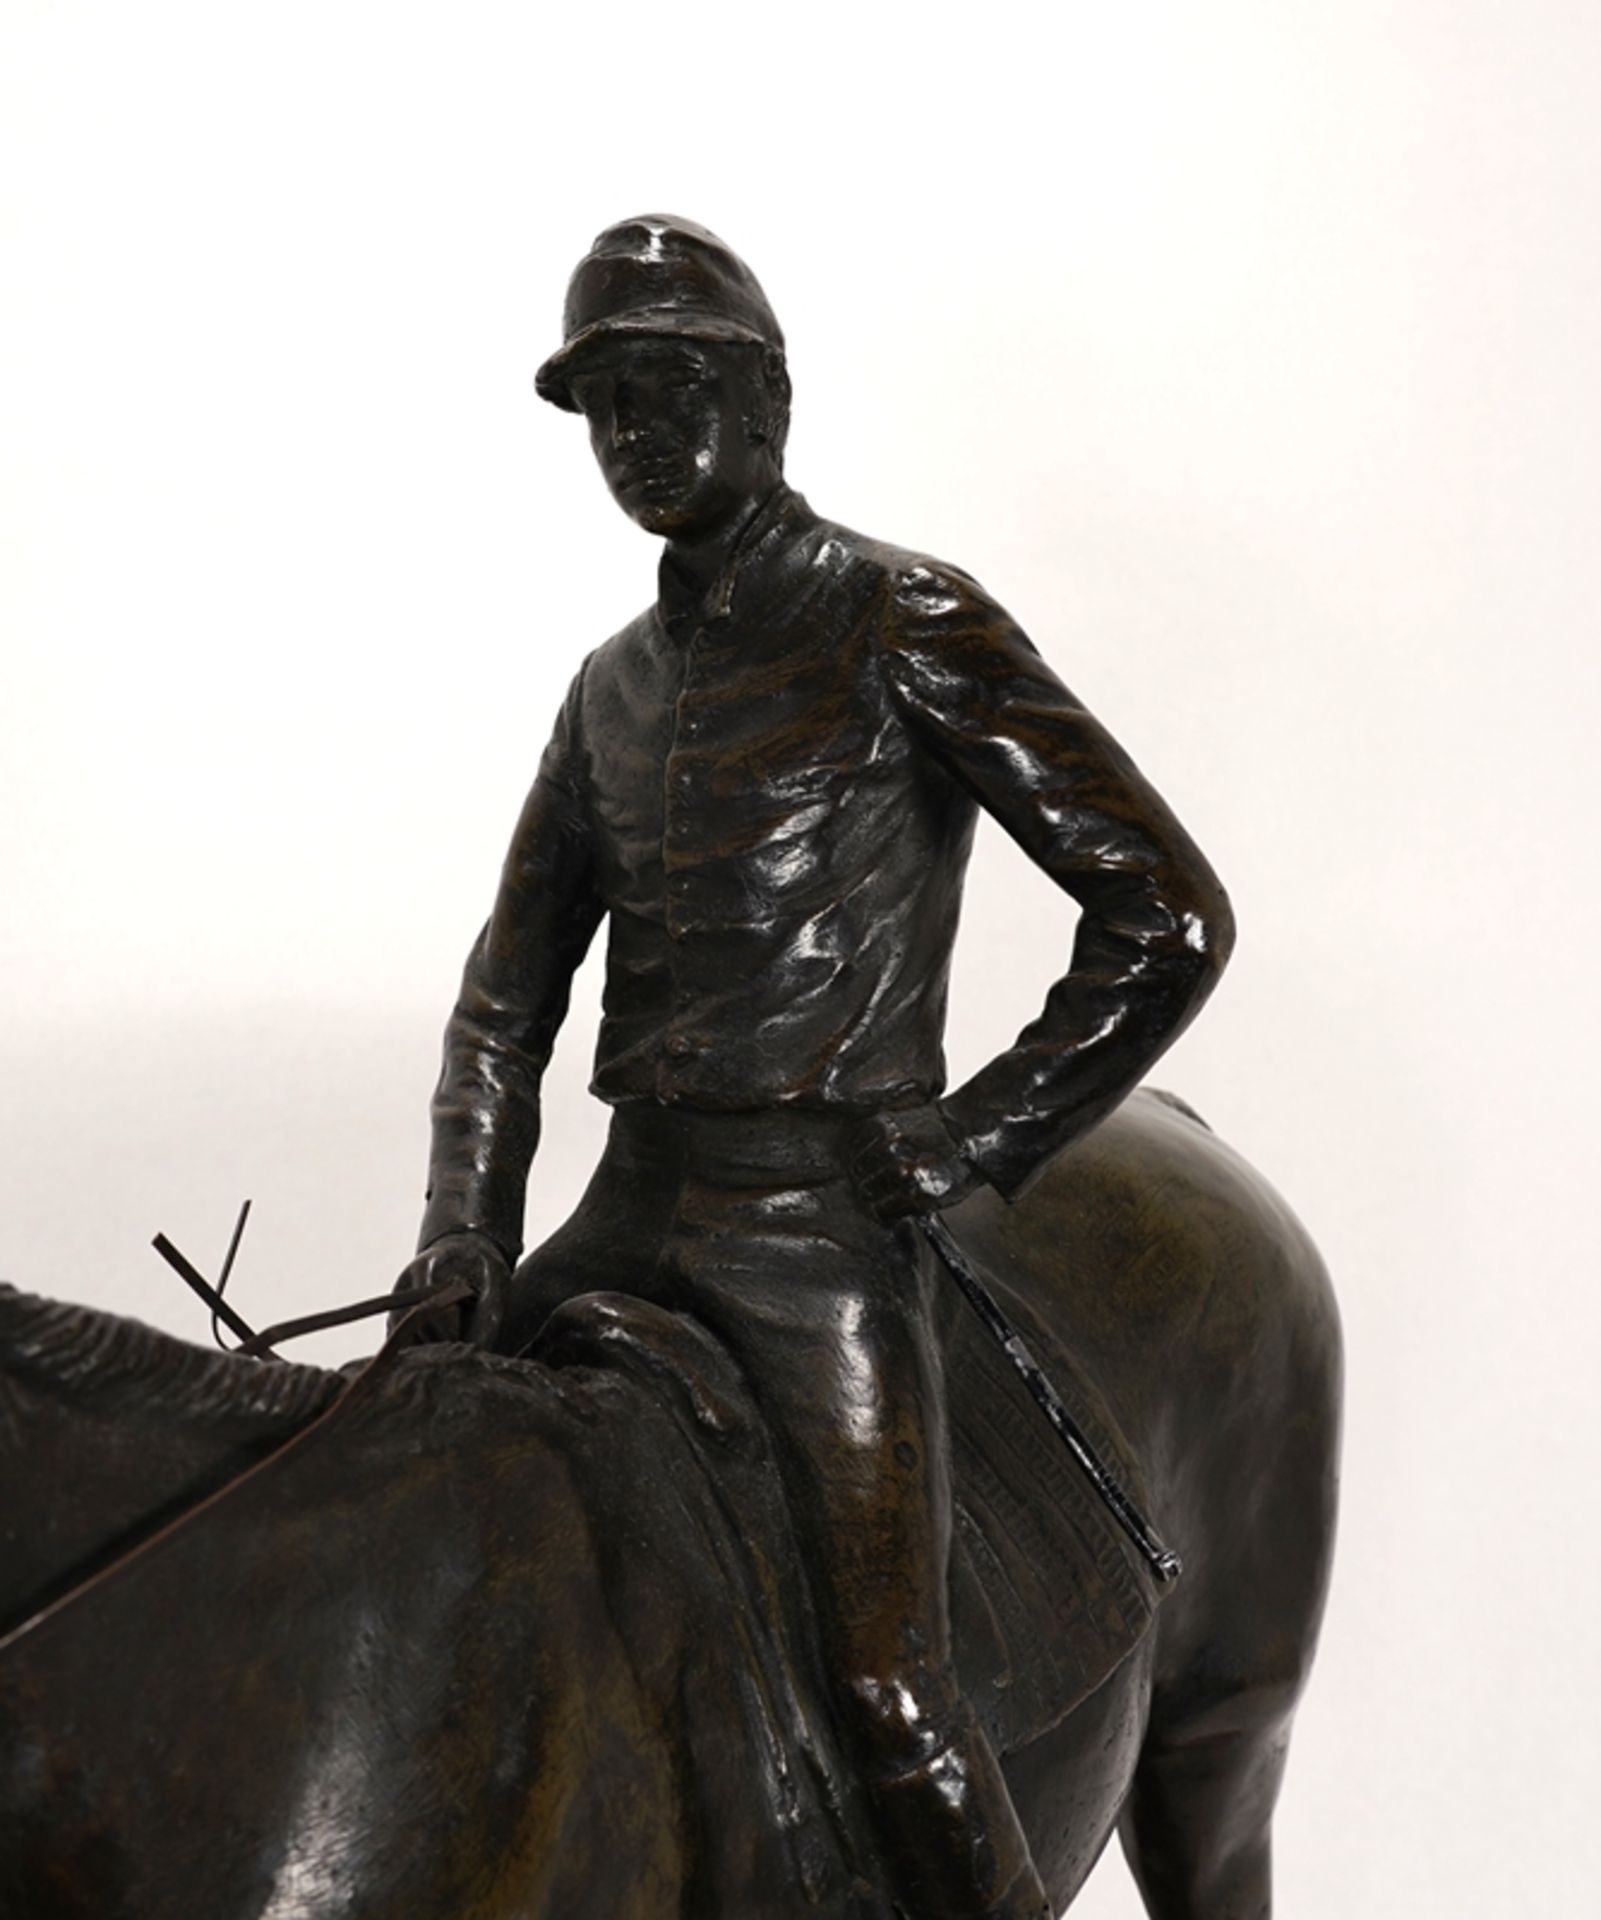 Pferdeskulptur | Horse sculpture - Image 4 of 5